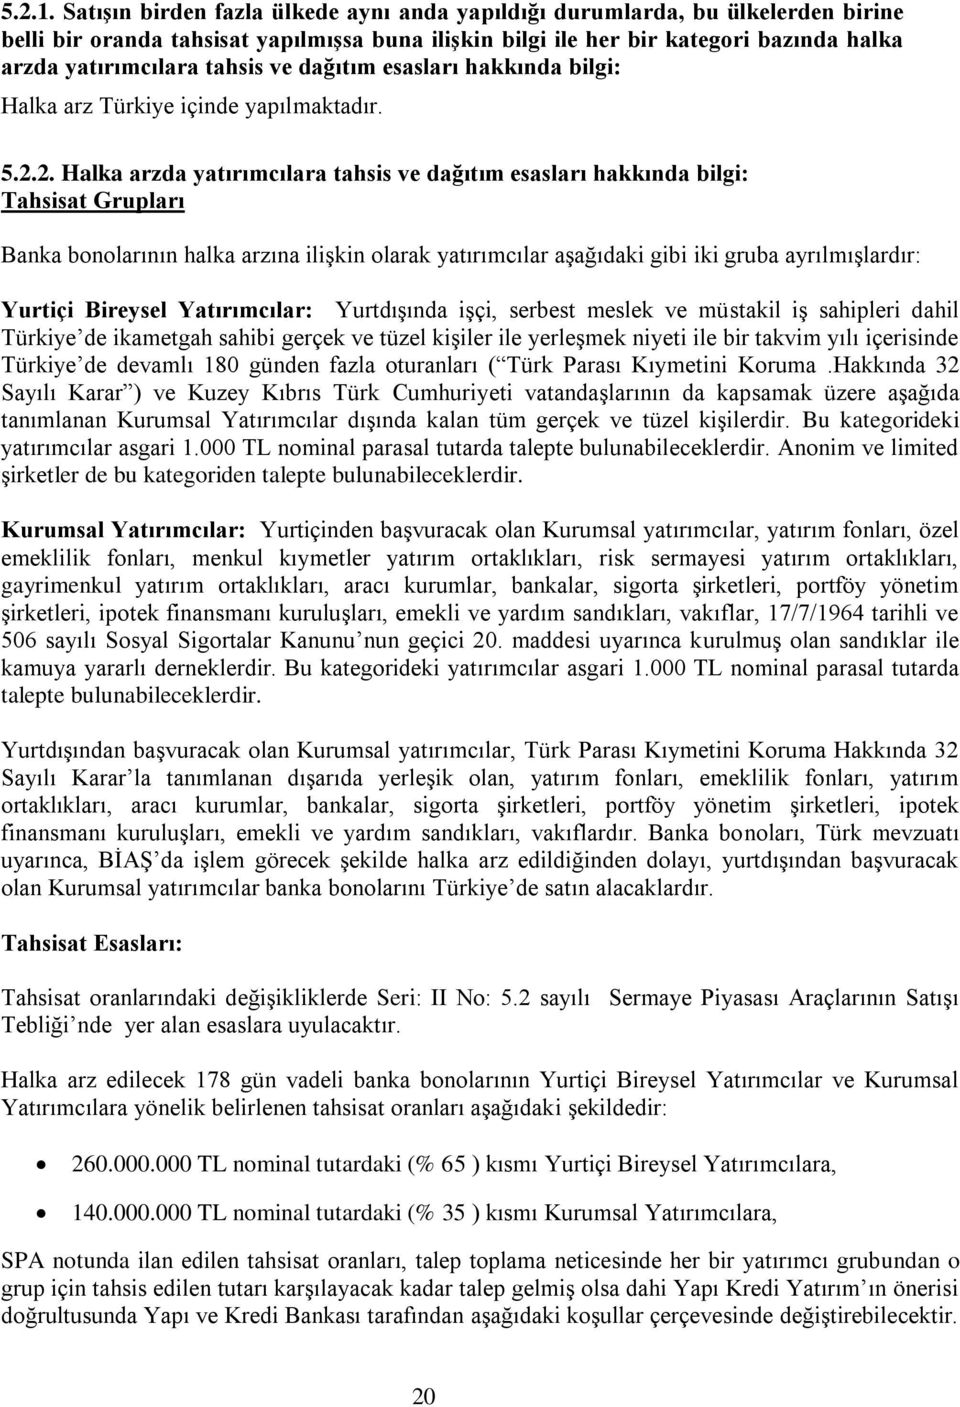 ve dağıtım esasları hakkında bilgi: Halka arz Türkiye içinde yapılmaktadır. 5.2.